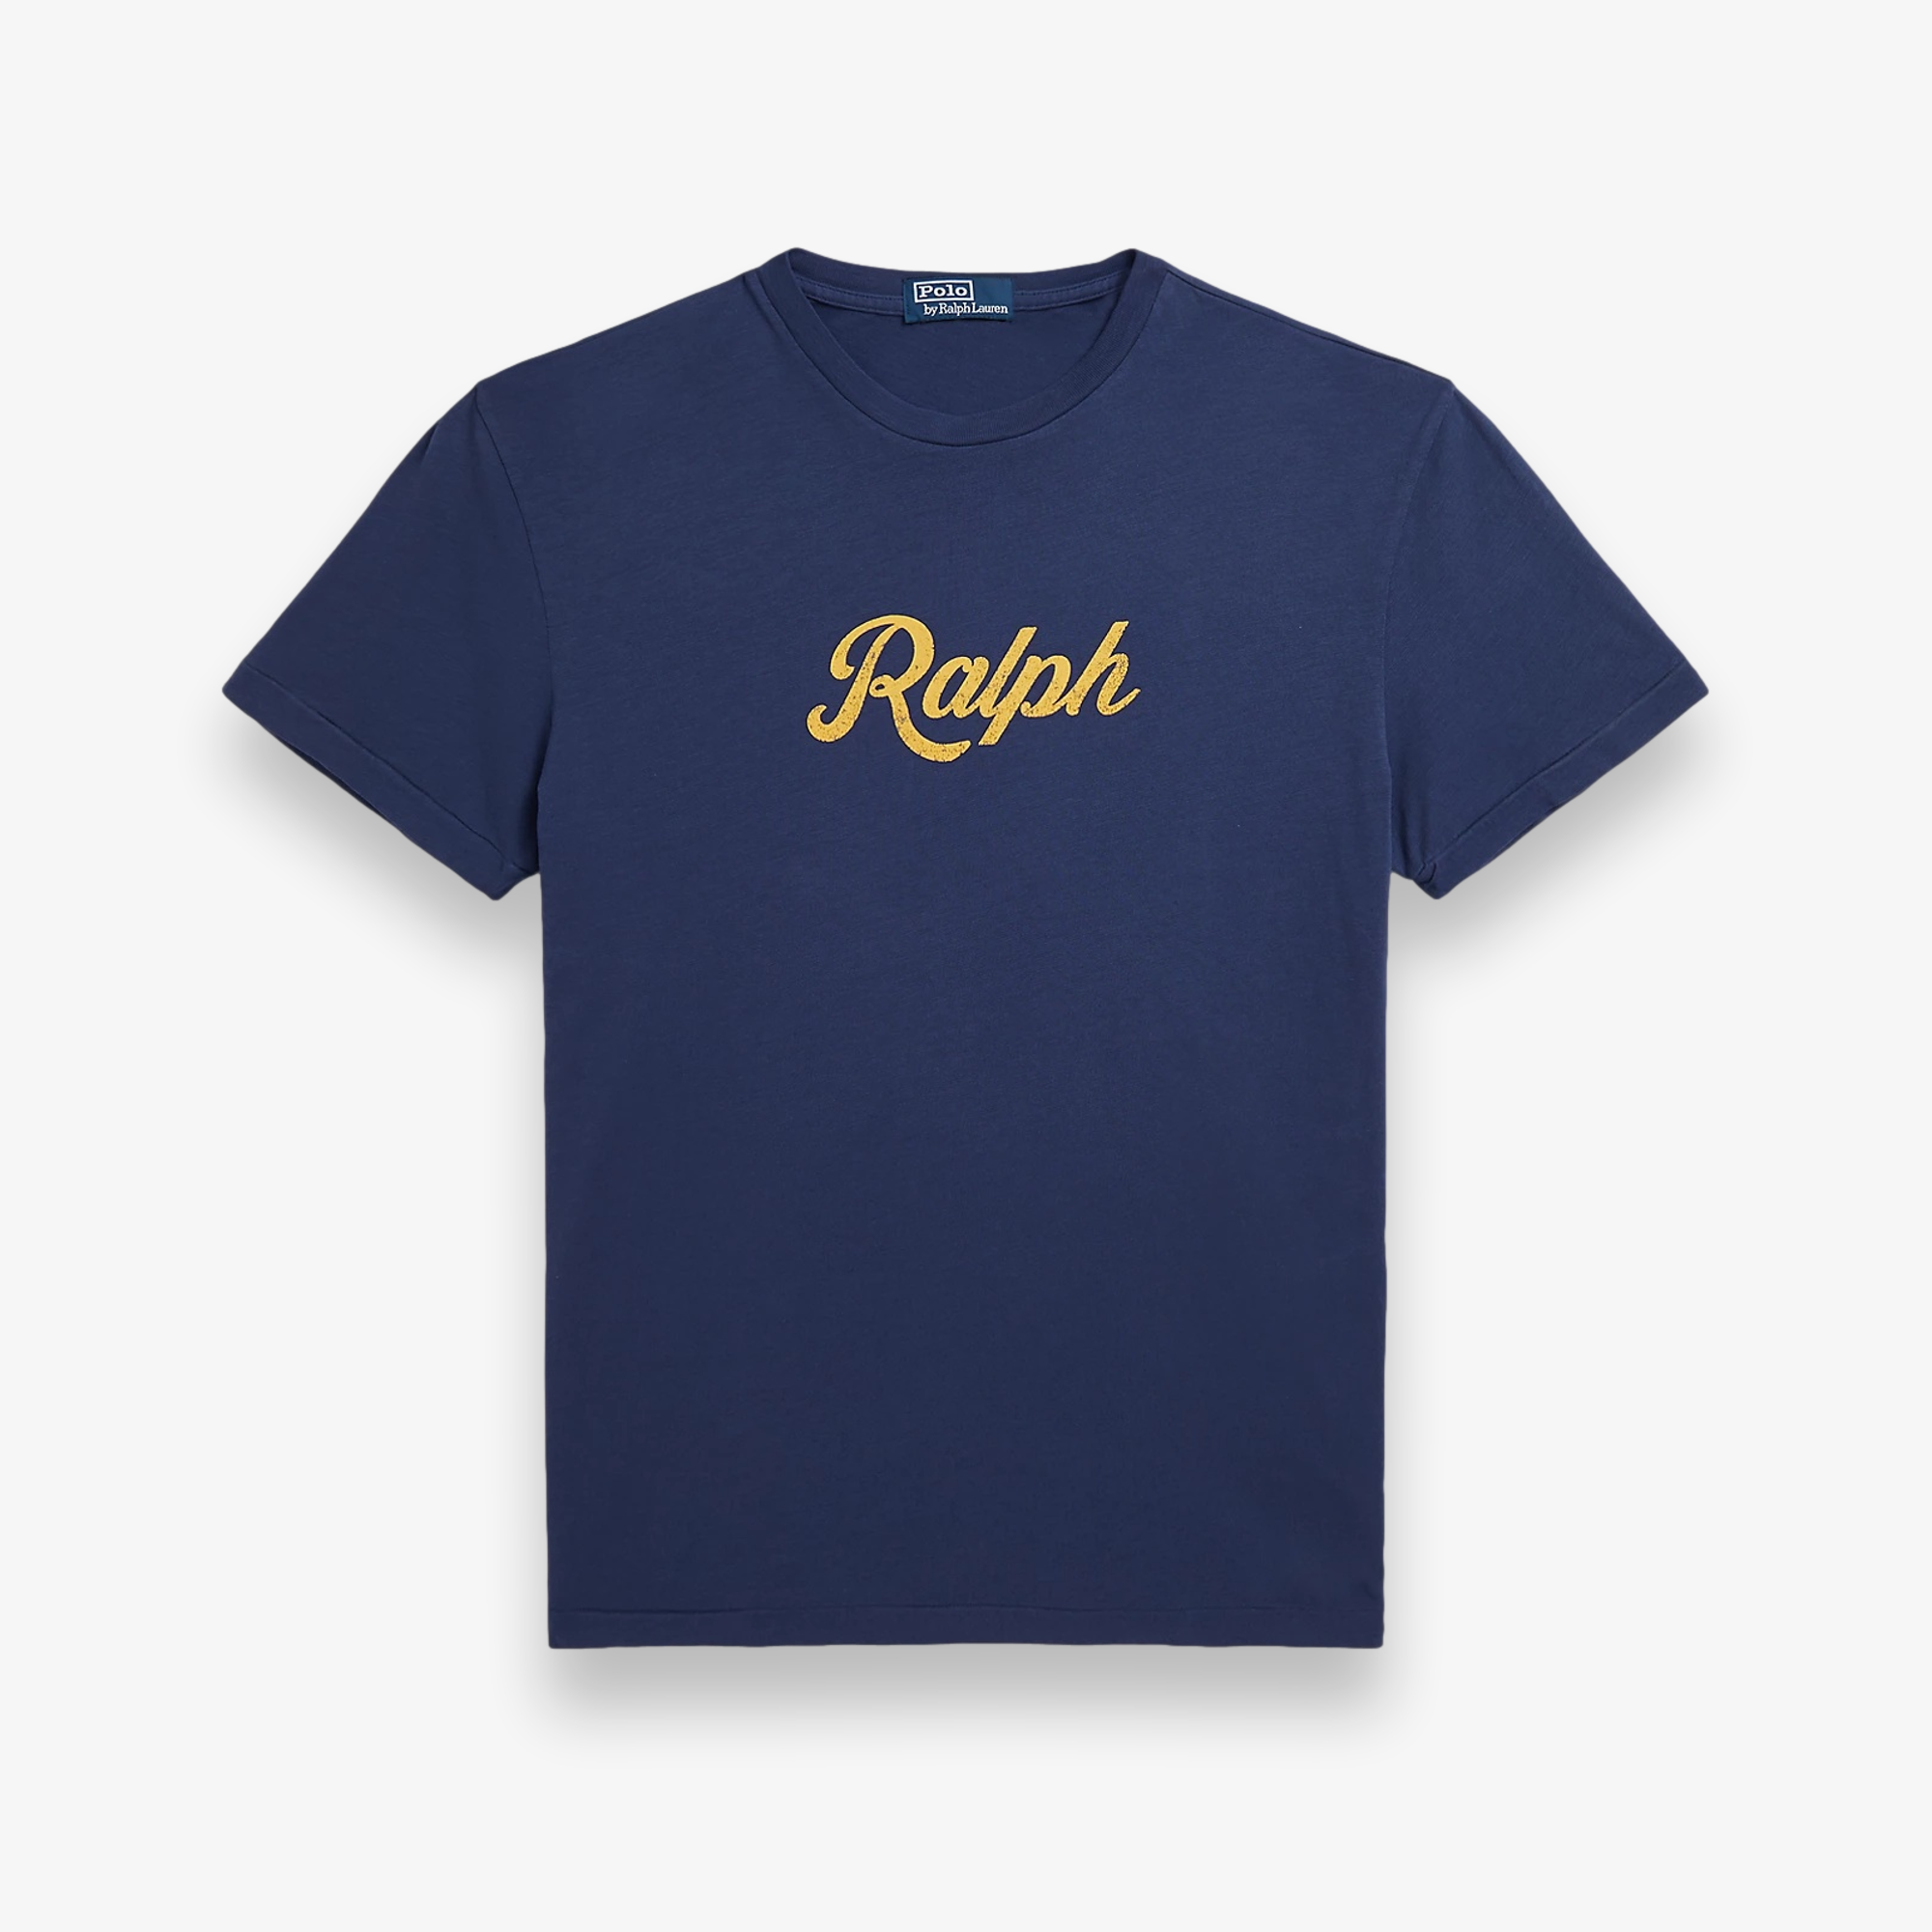 The Ralph T-Shirt